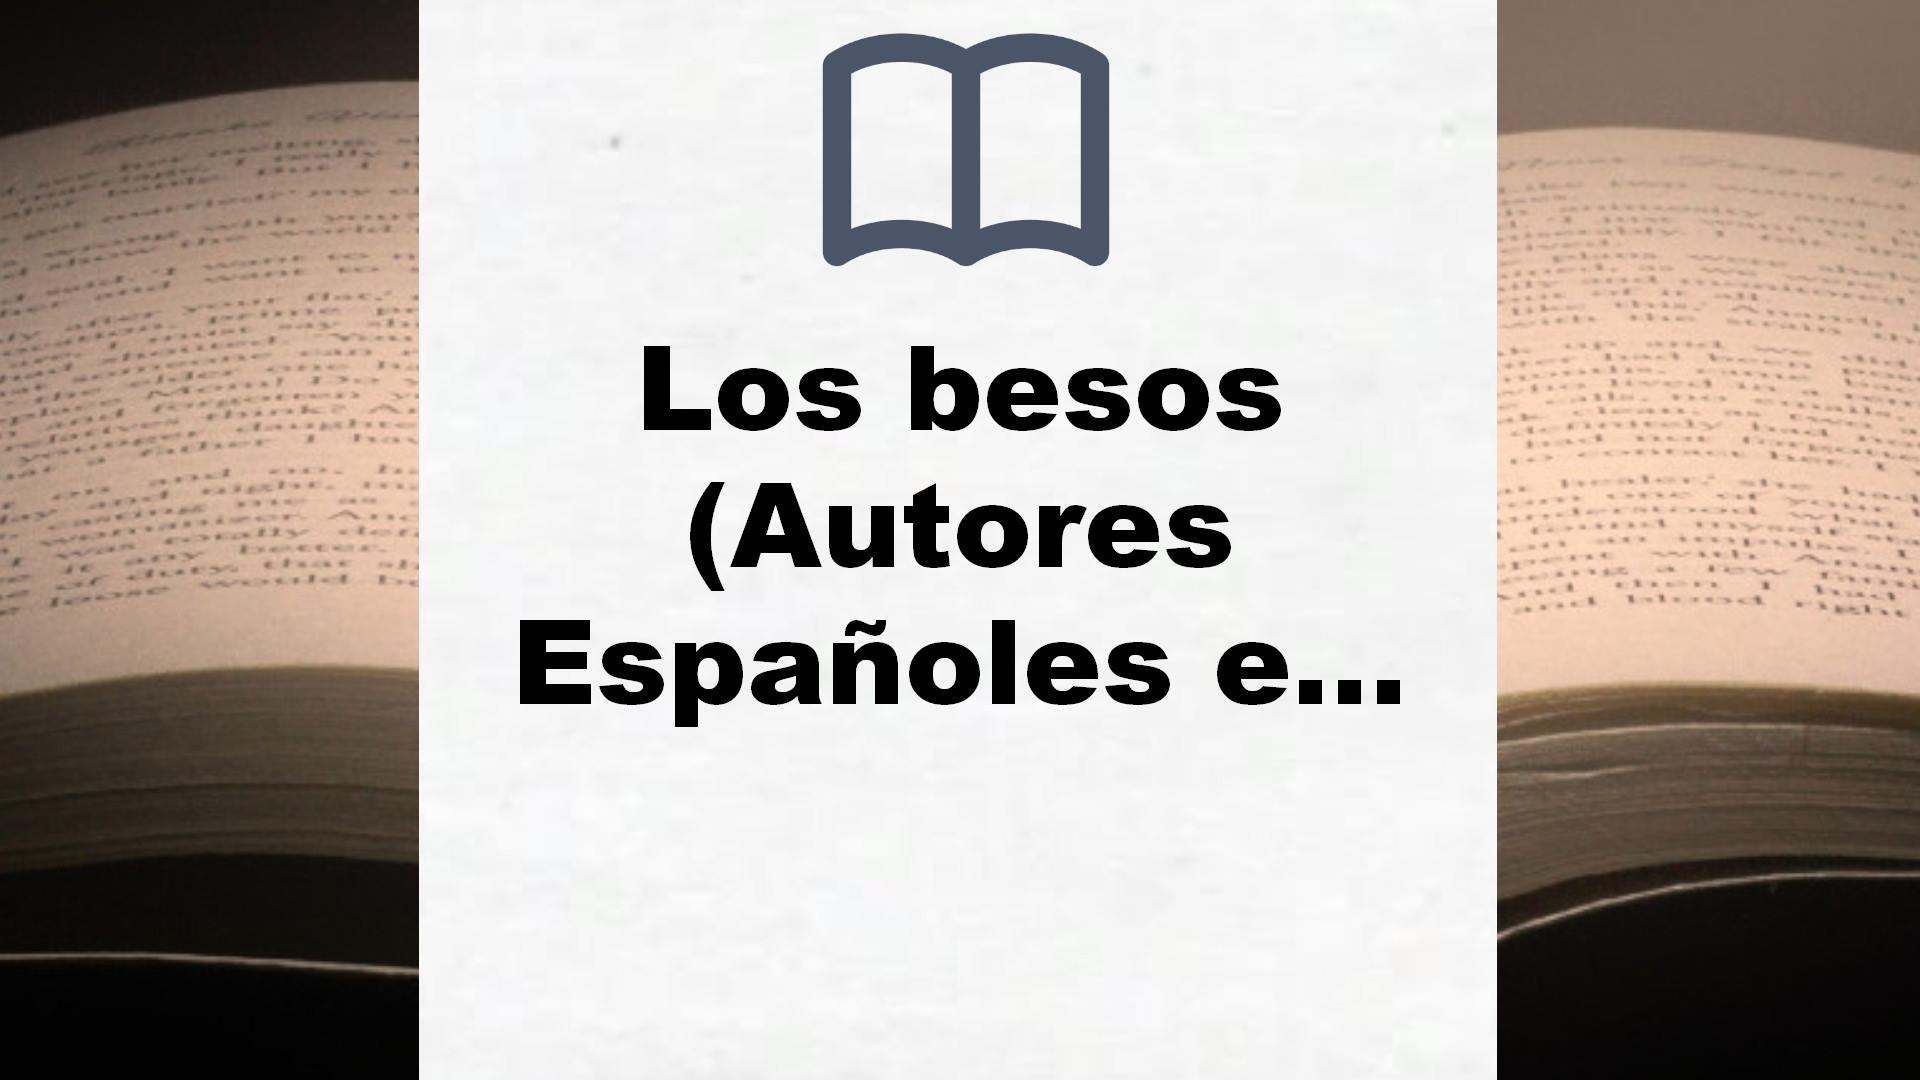 Los besos (Autores Españoles e Iberoamericanos) – Reseña del libro